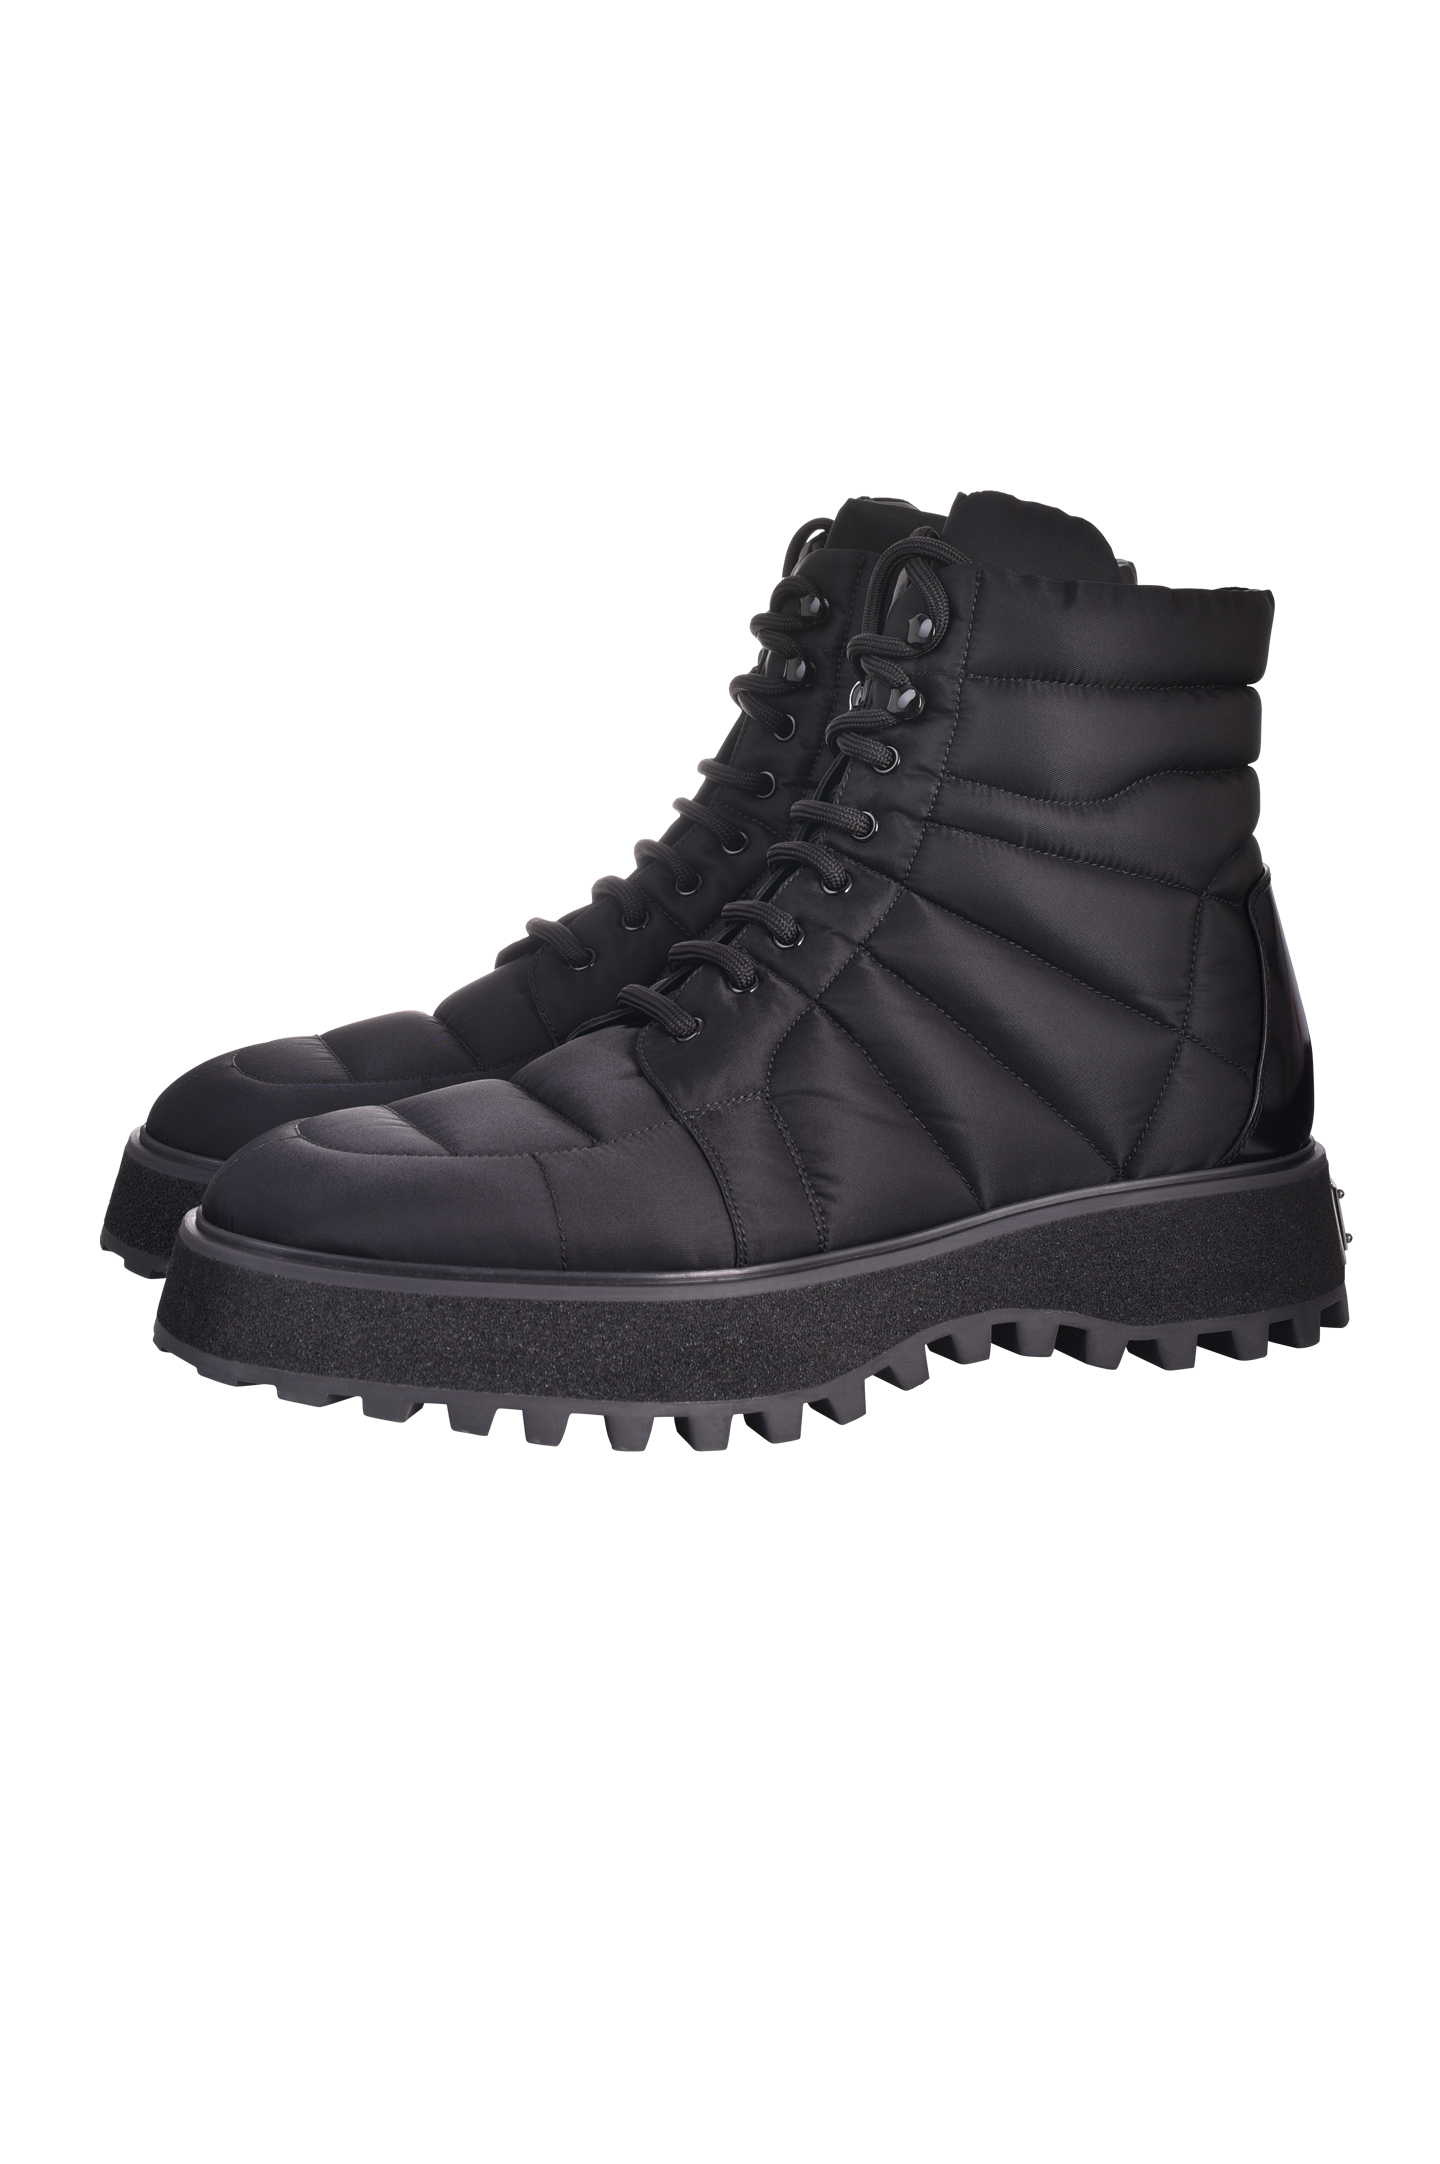 Ботинки DOLCE & GABBANA A60404 AQ302, цвет: Черный, Мужской